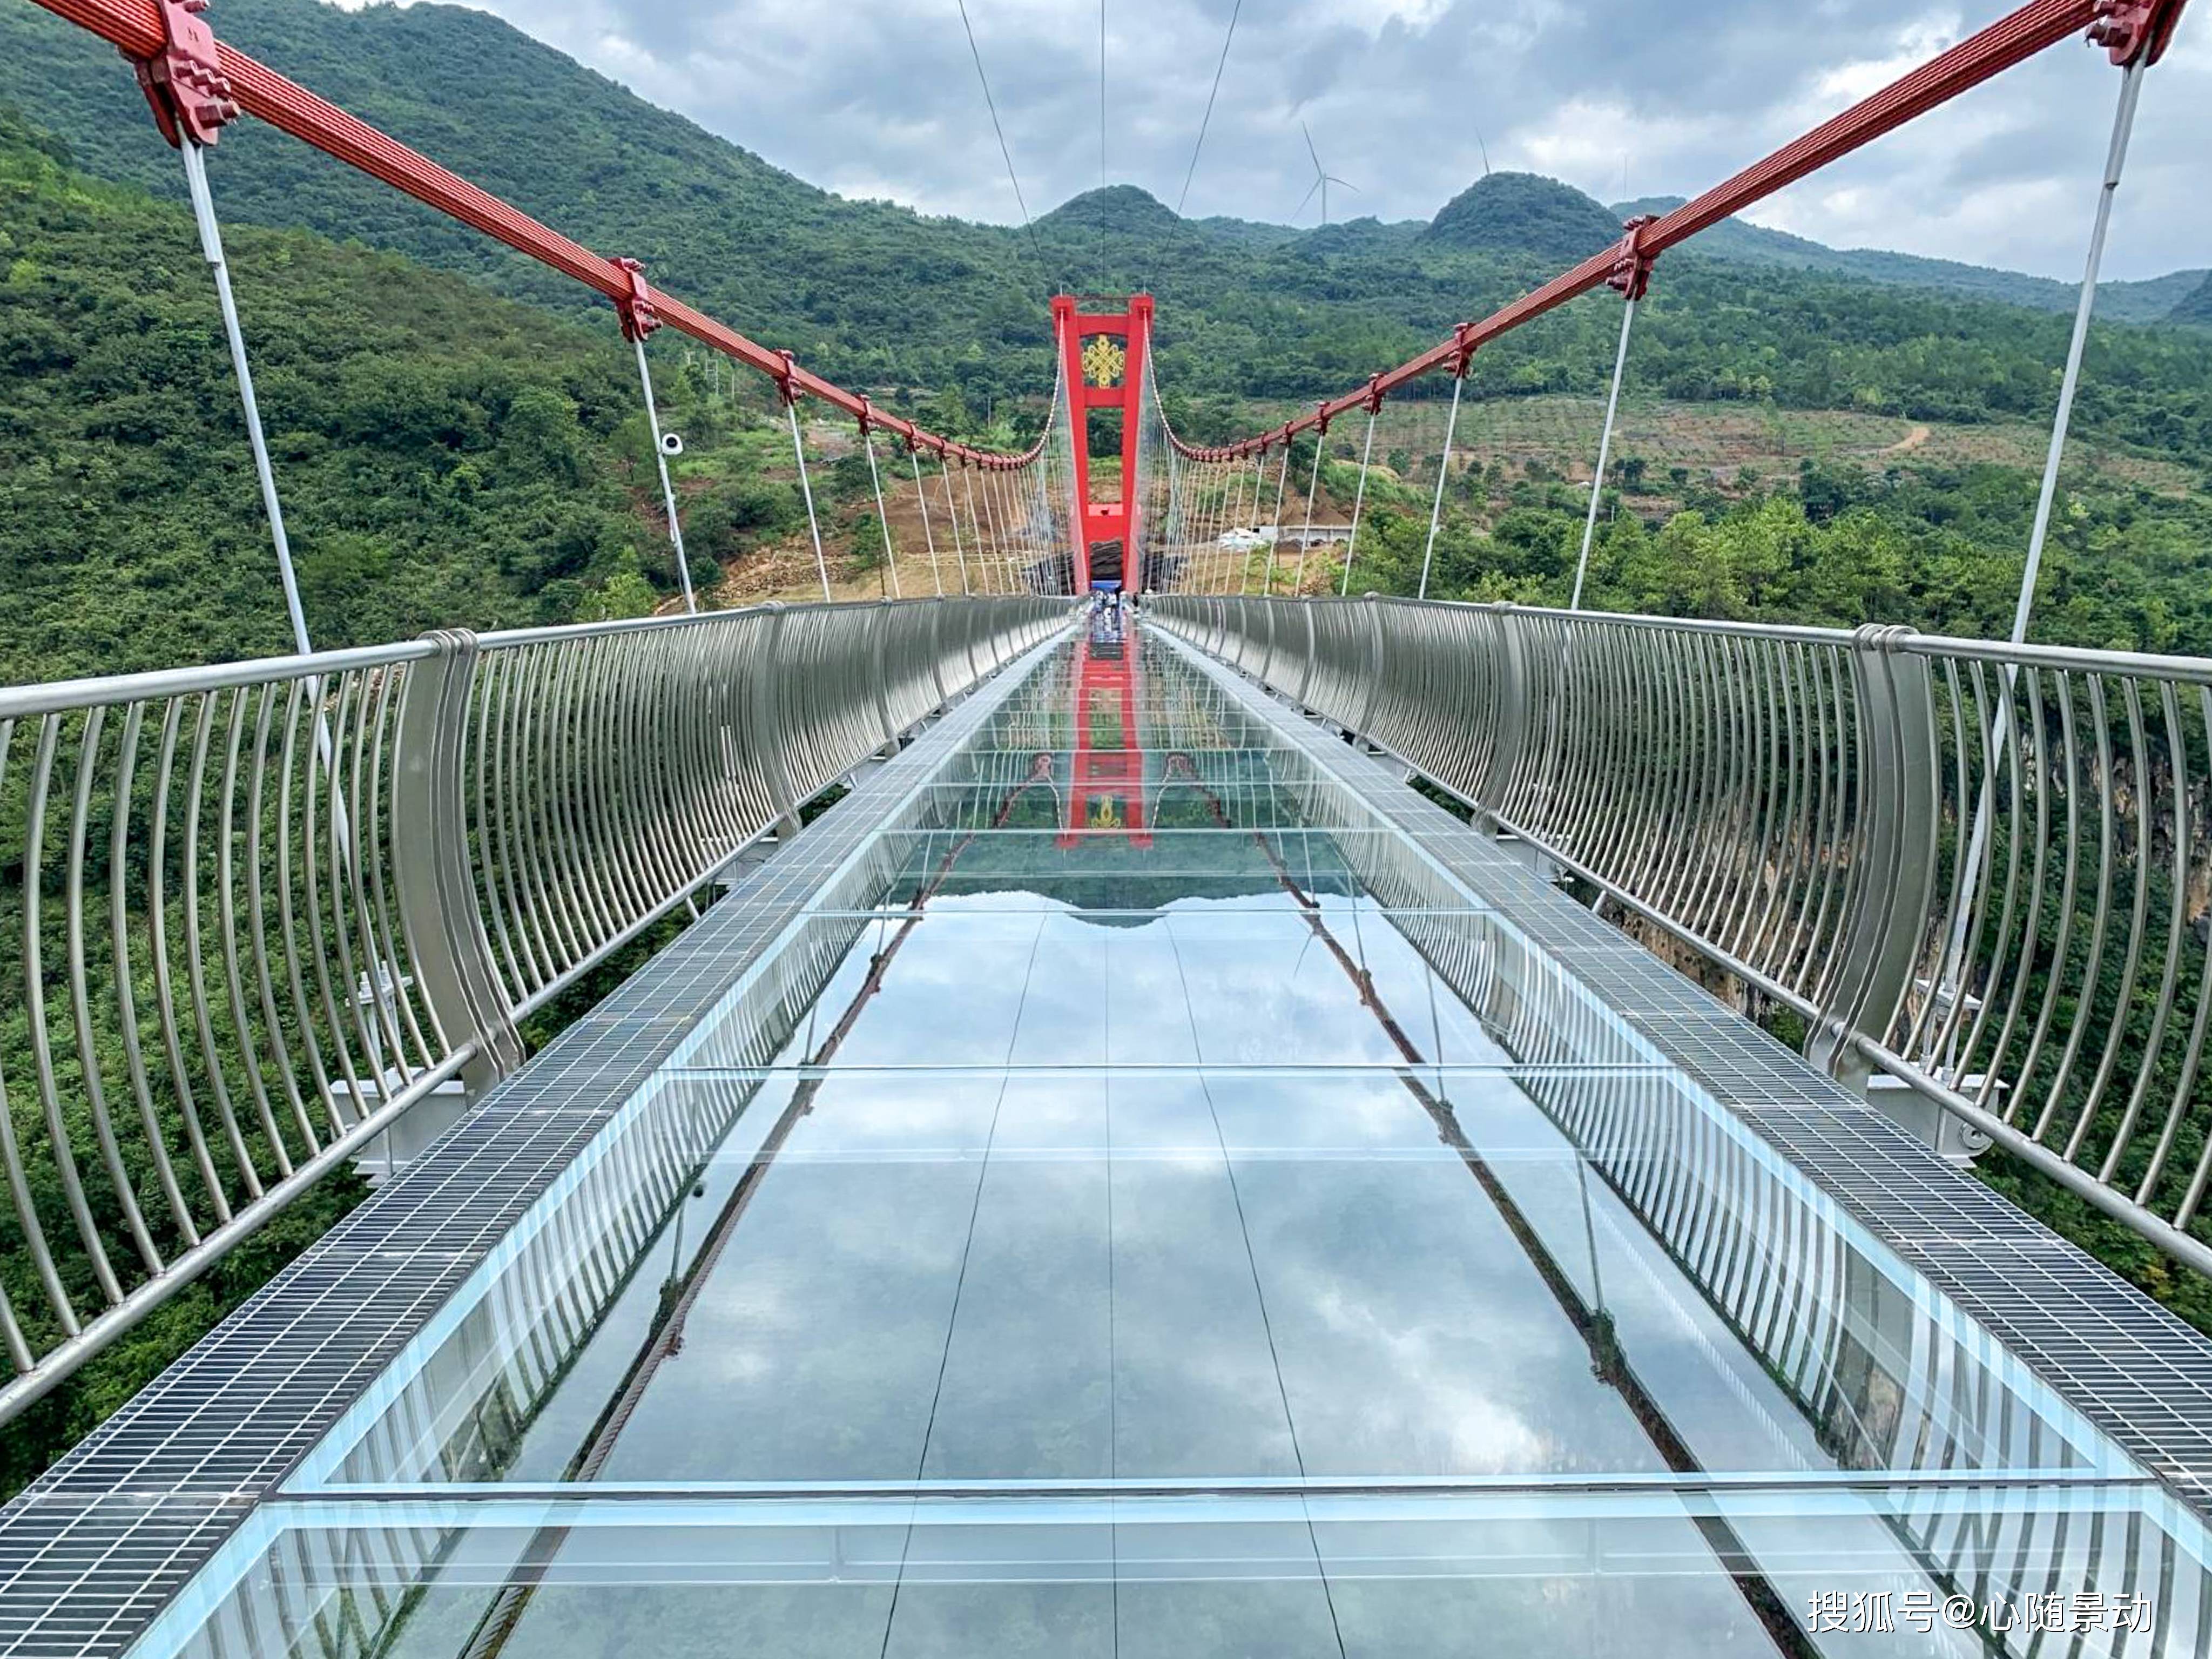 广东擎天玻璃桥打破世界纪录,有最长之称,吸引了一大批游客关注